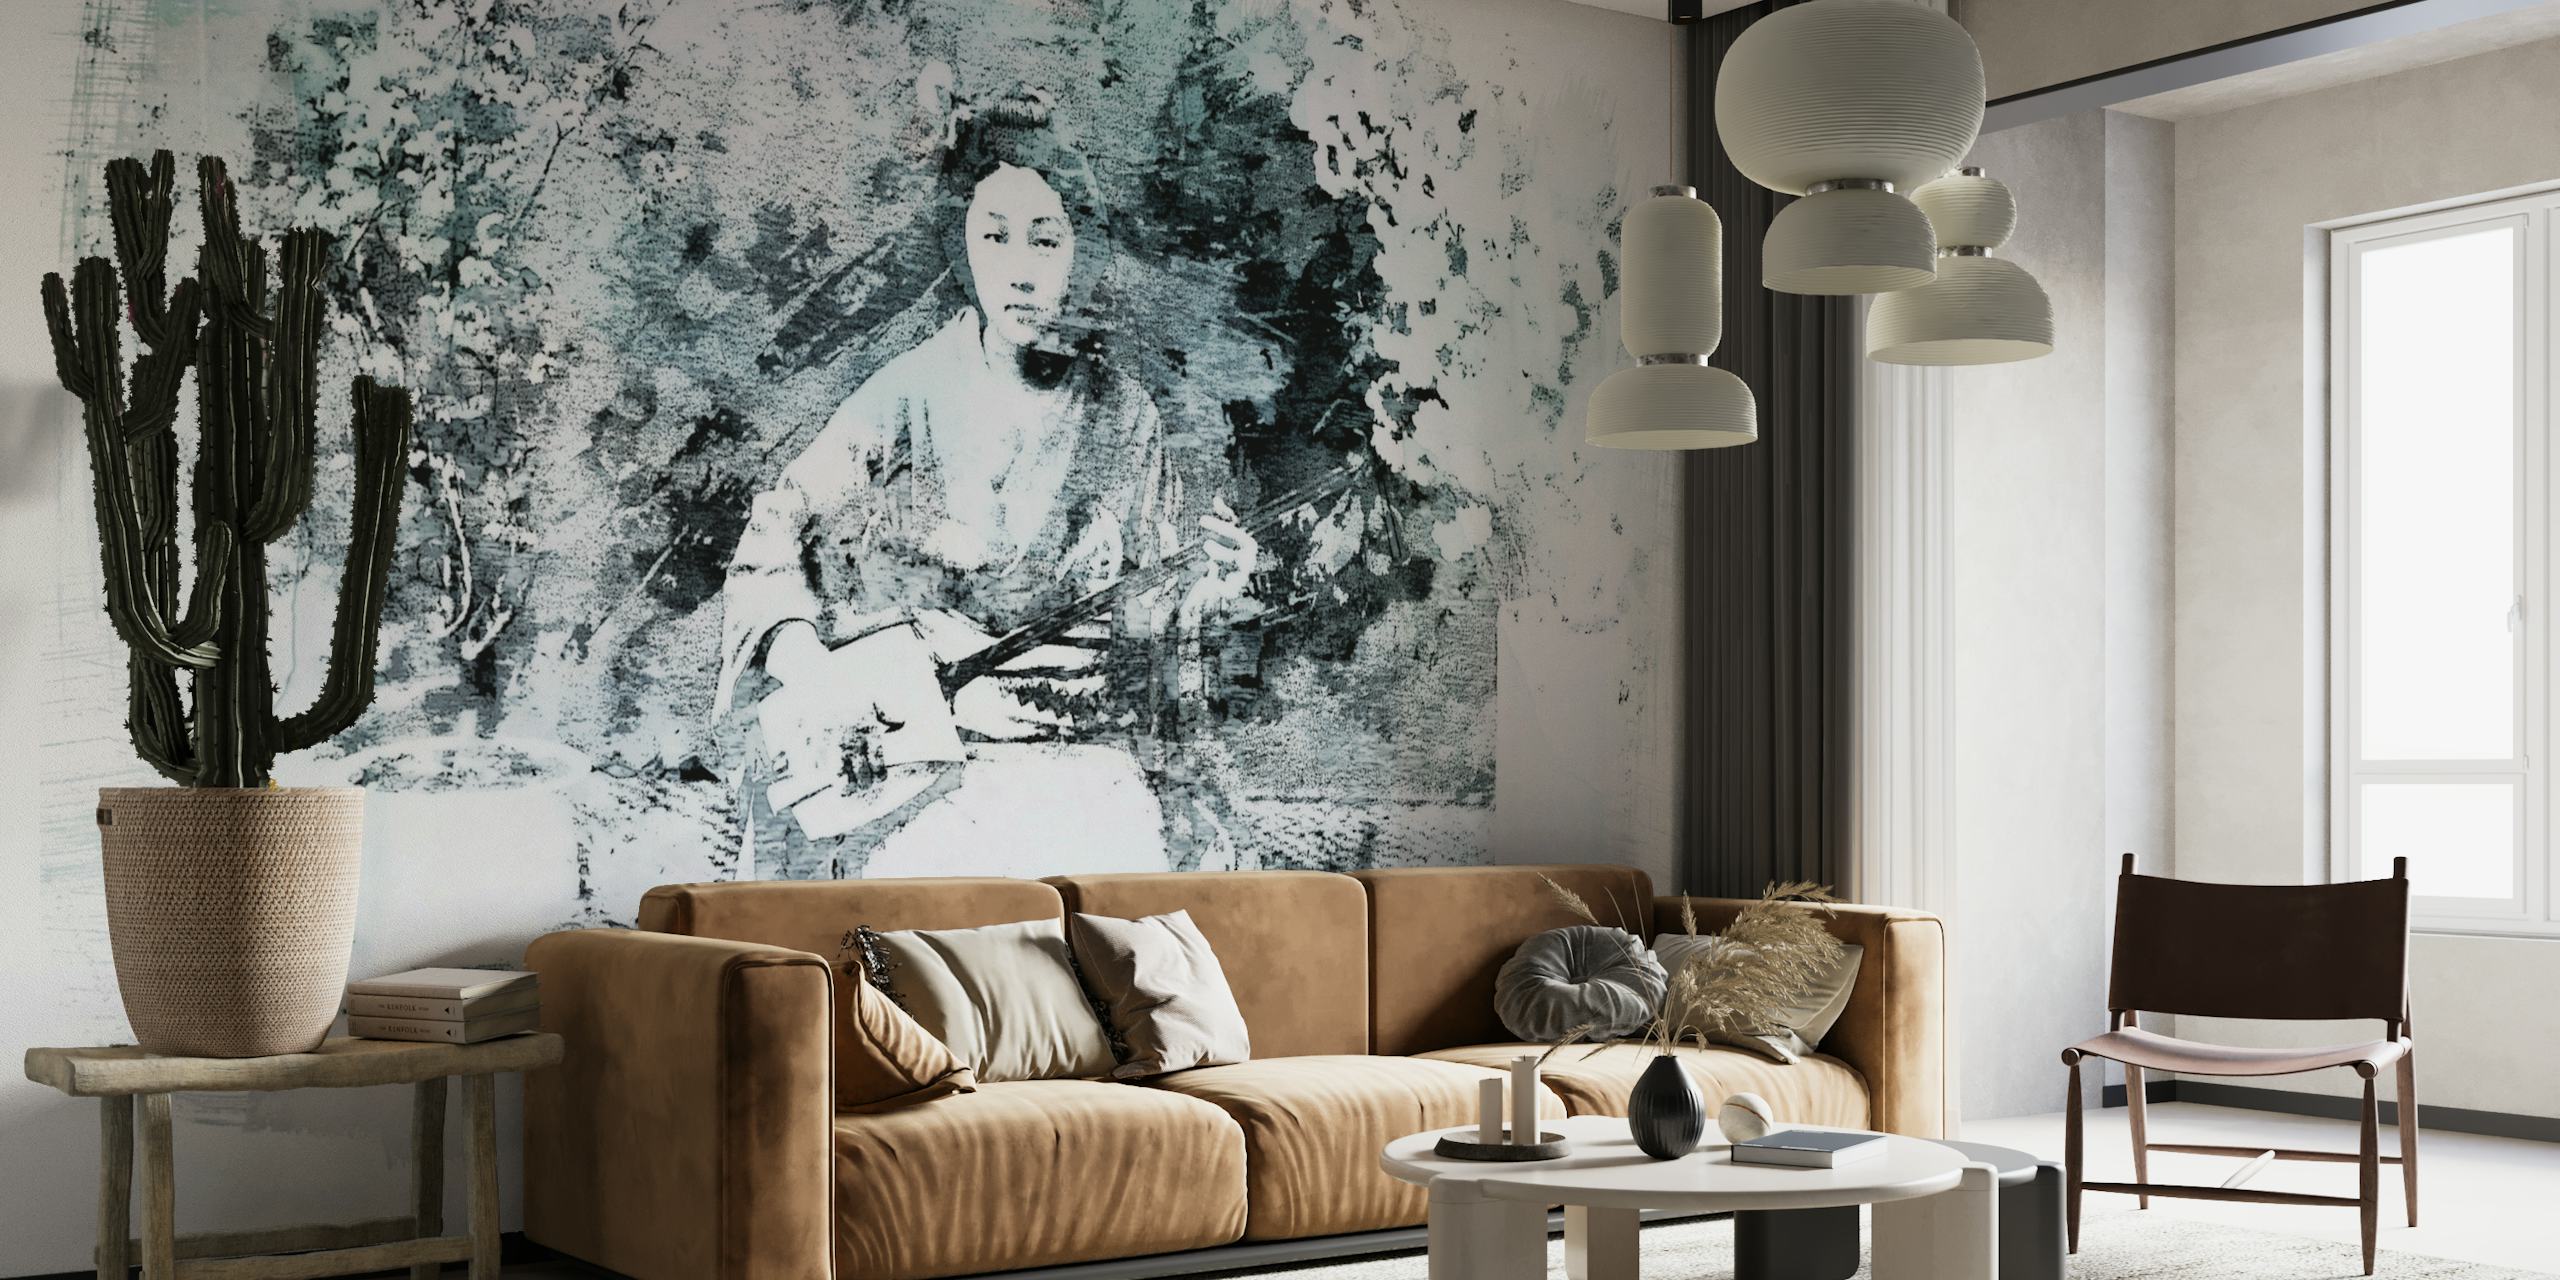 Tyylikäs geisha istuu rauhallisessa puutarhan seinämaalauksessa